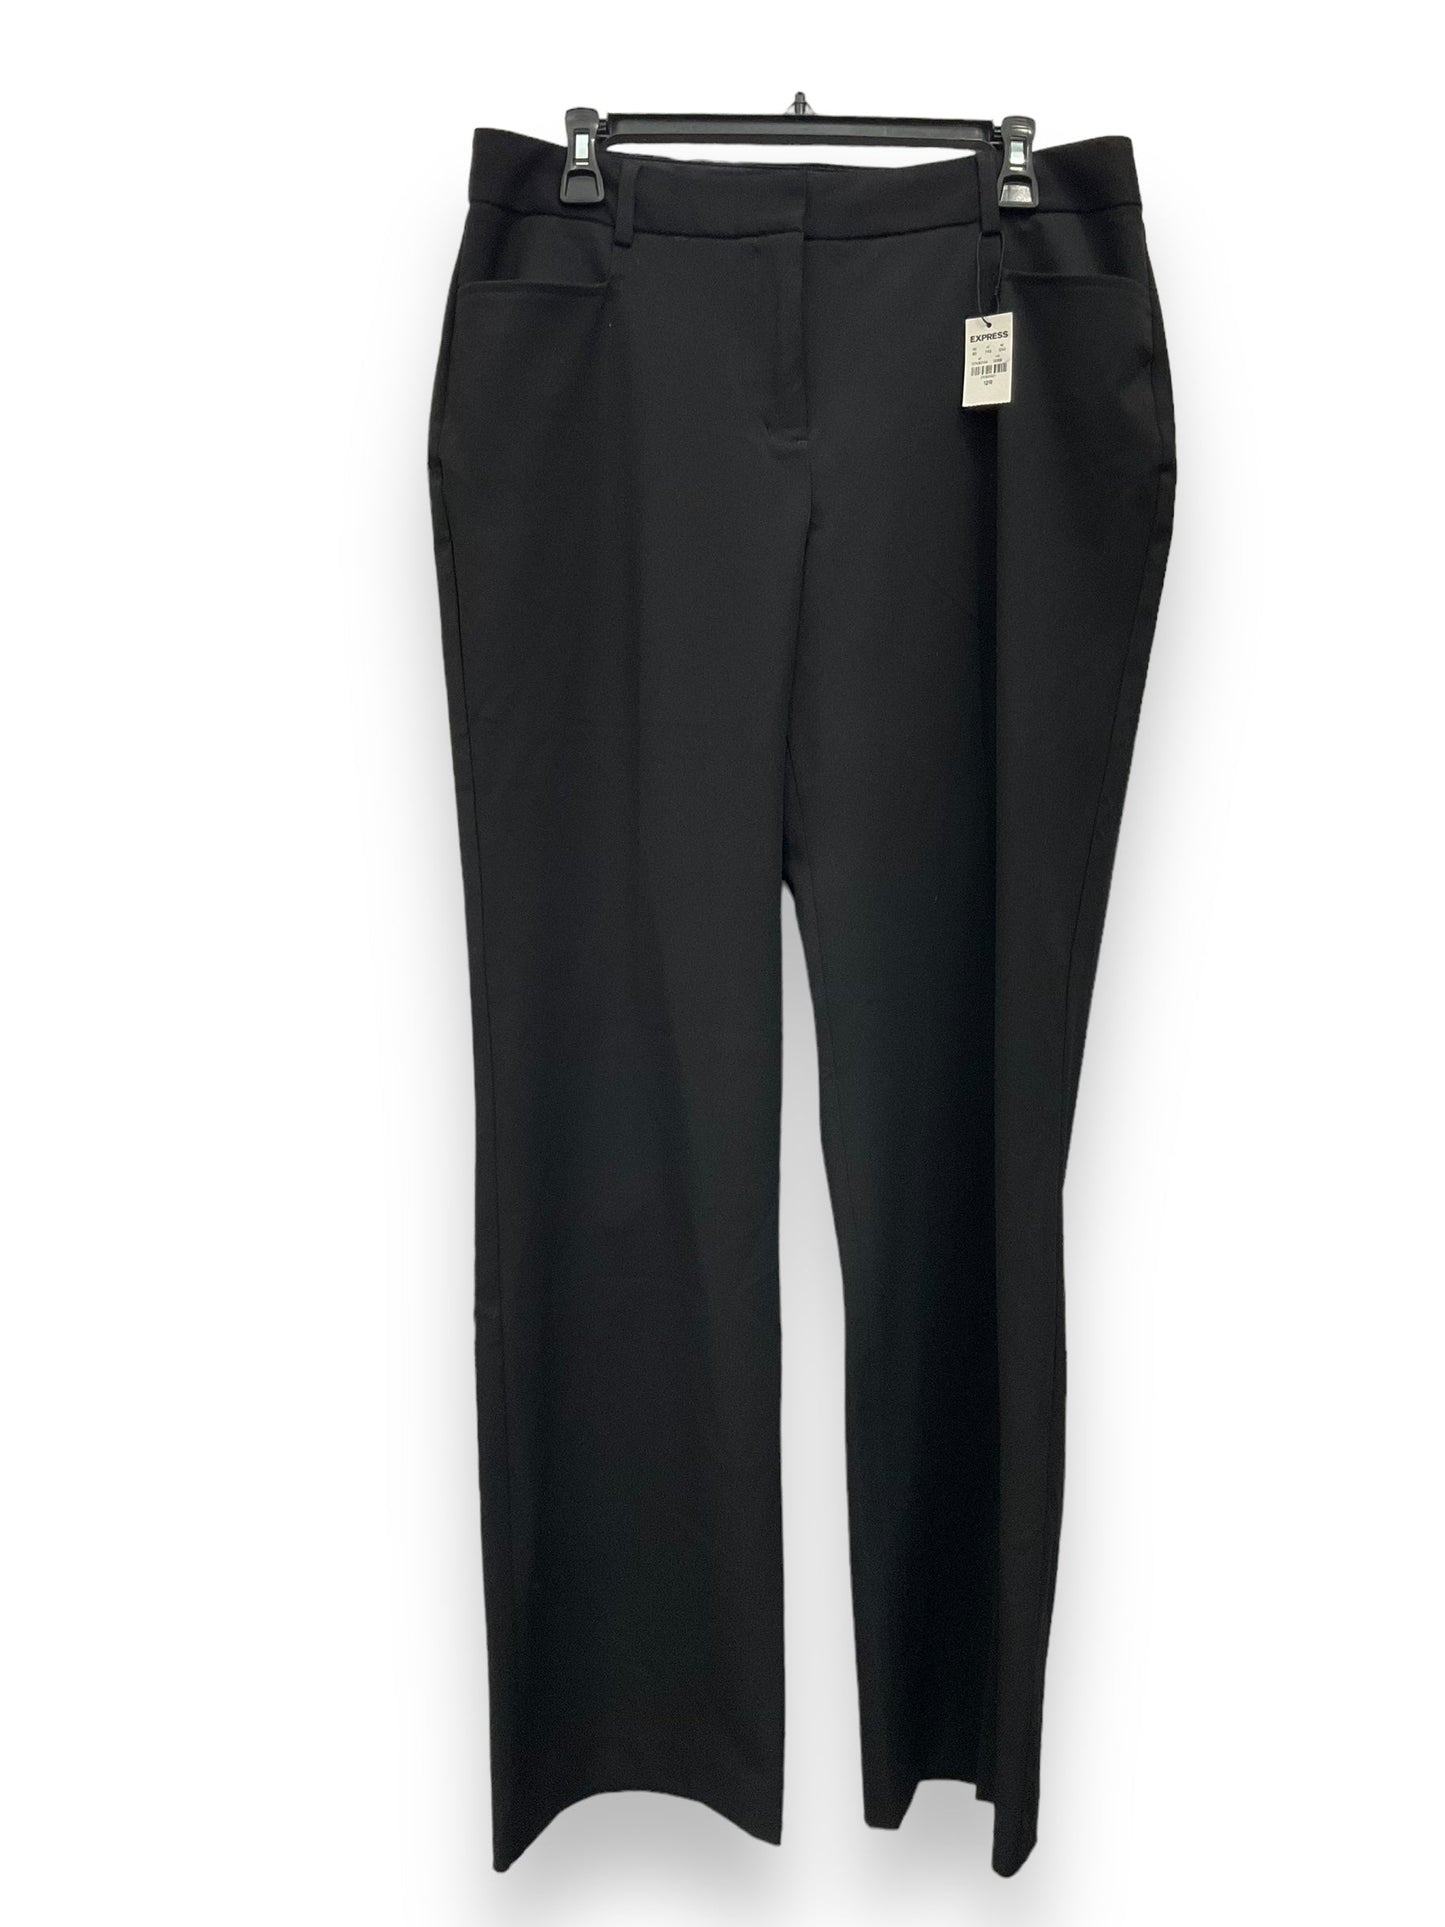 Black Pants Dress Express, Size 12